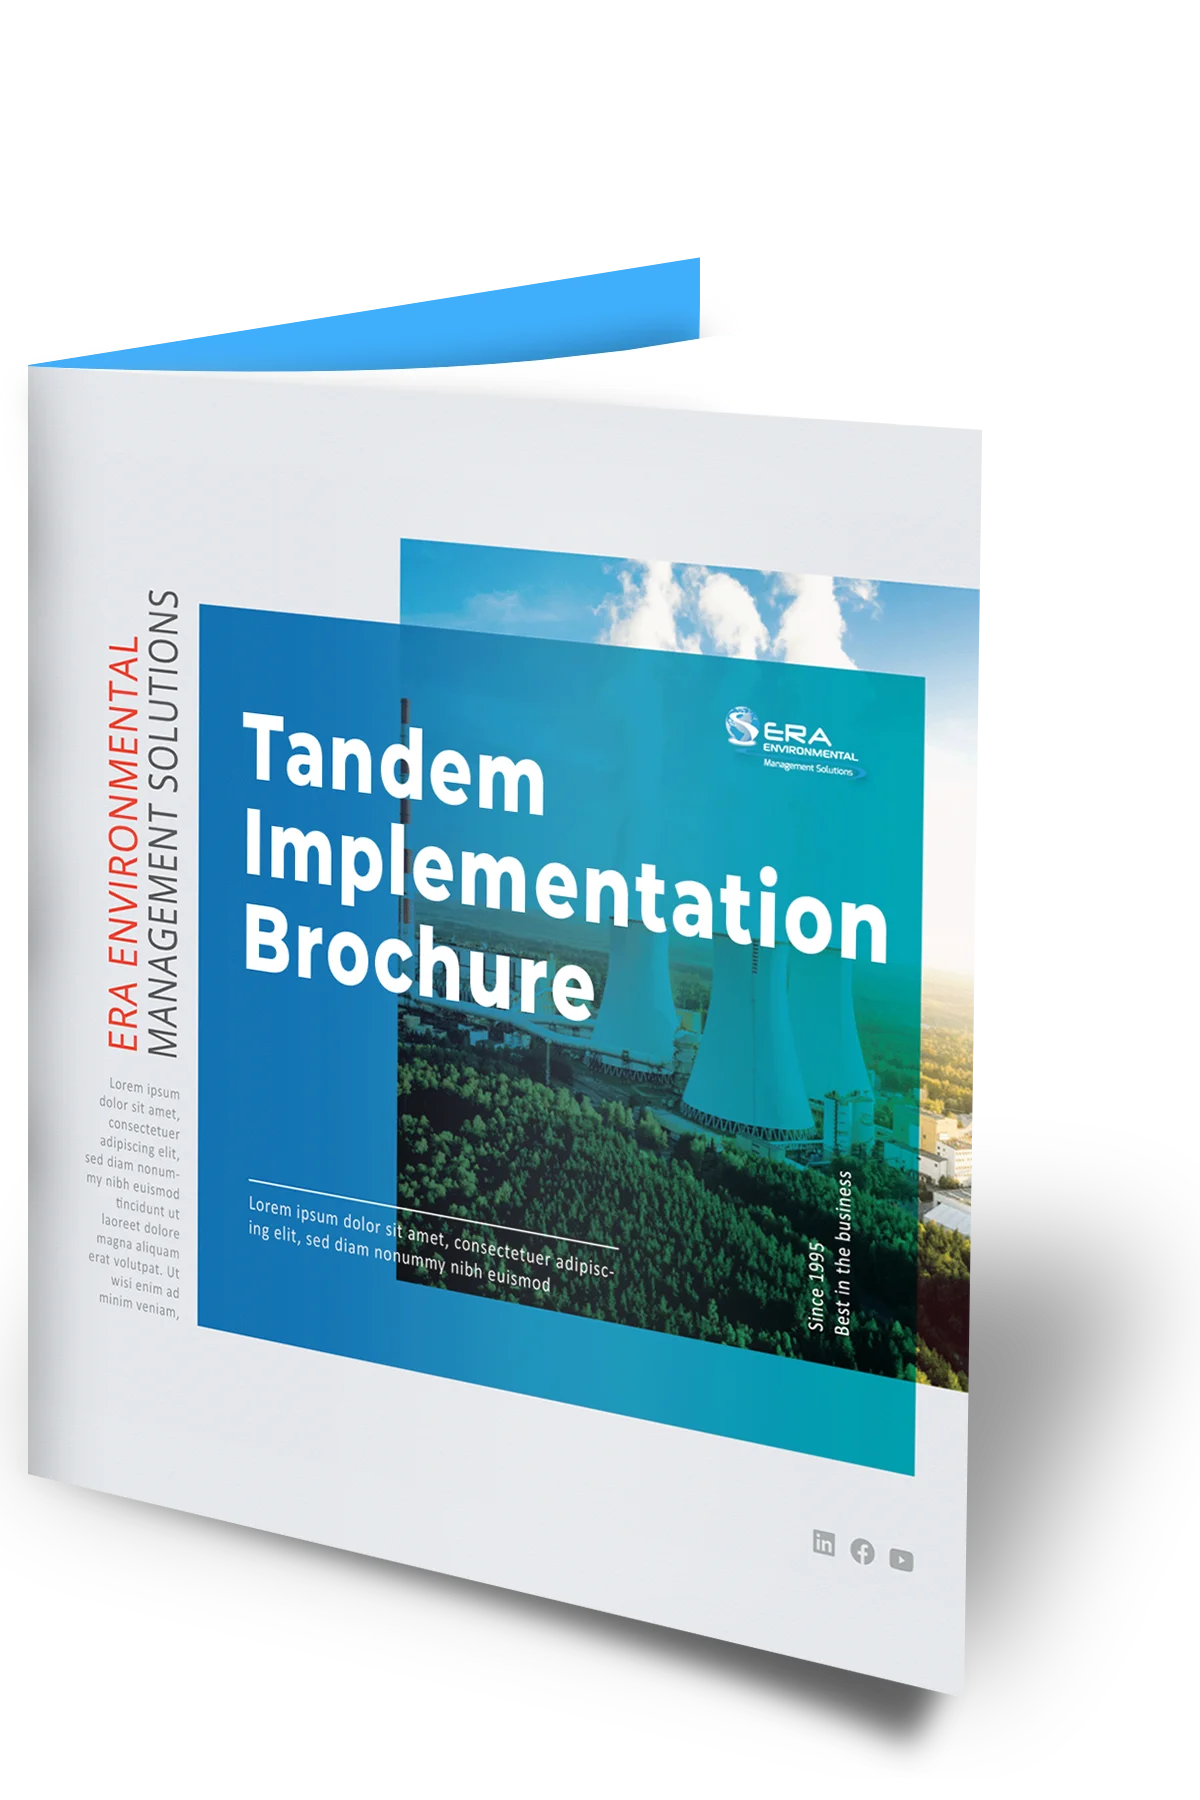 Tandem-Implementationt-brochure-mock-up